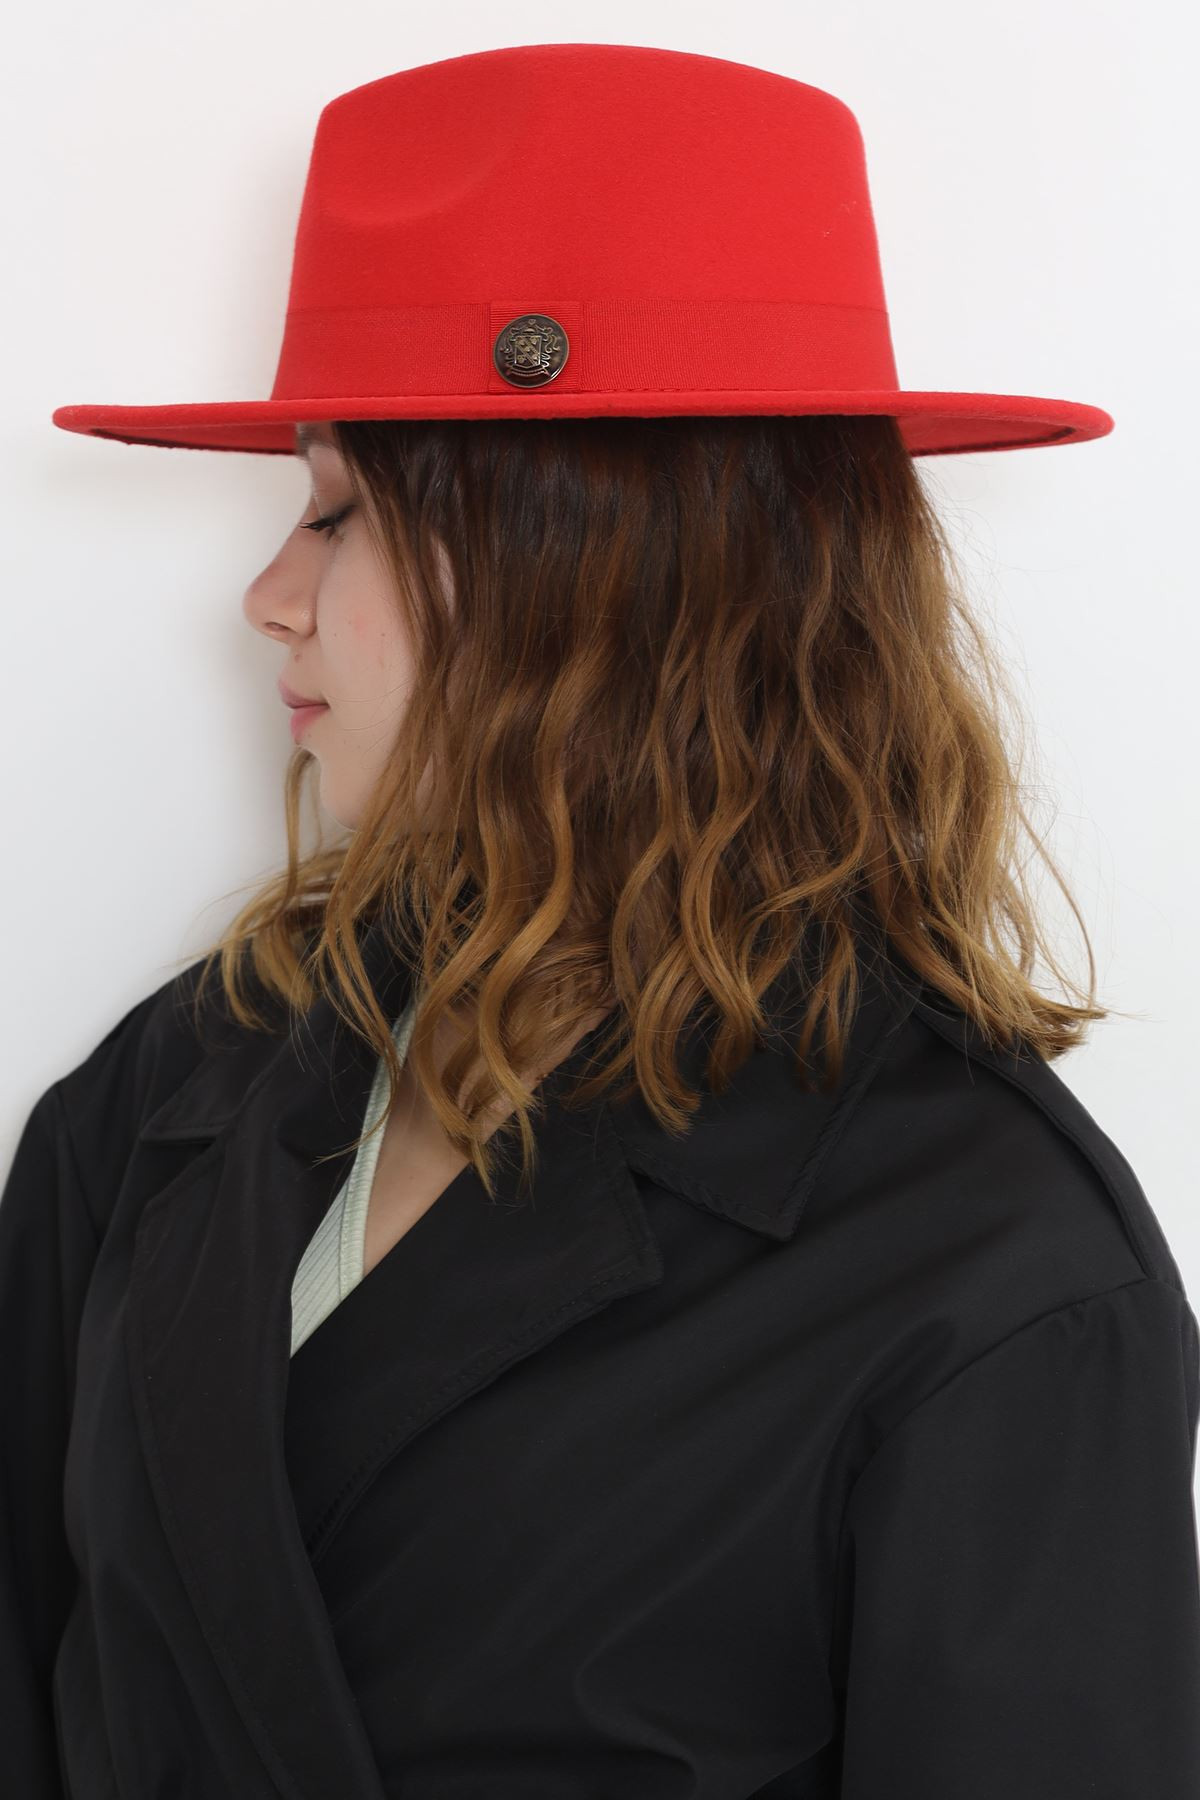 Fötr Şapka Kırmızı - 11790.1736.